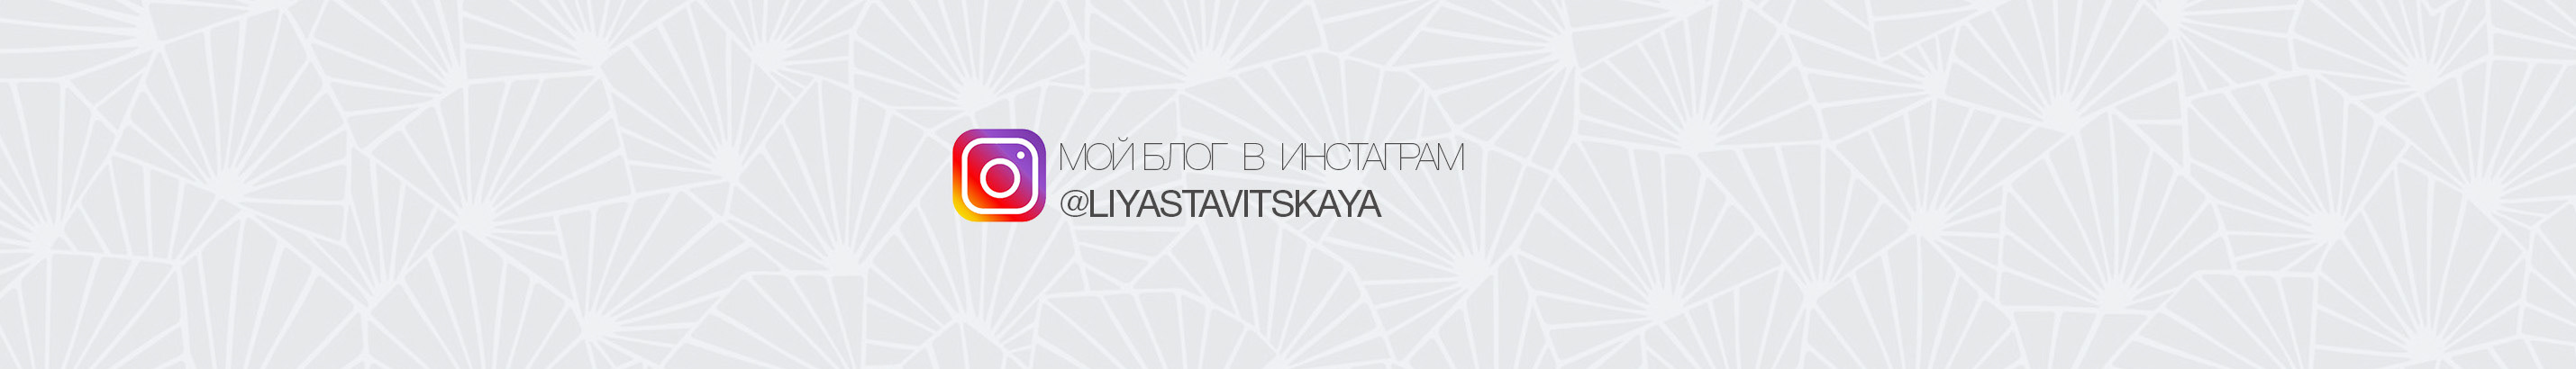 Лия Ставицкая's profile banner